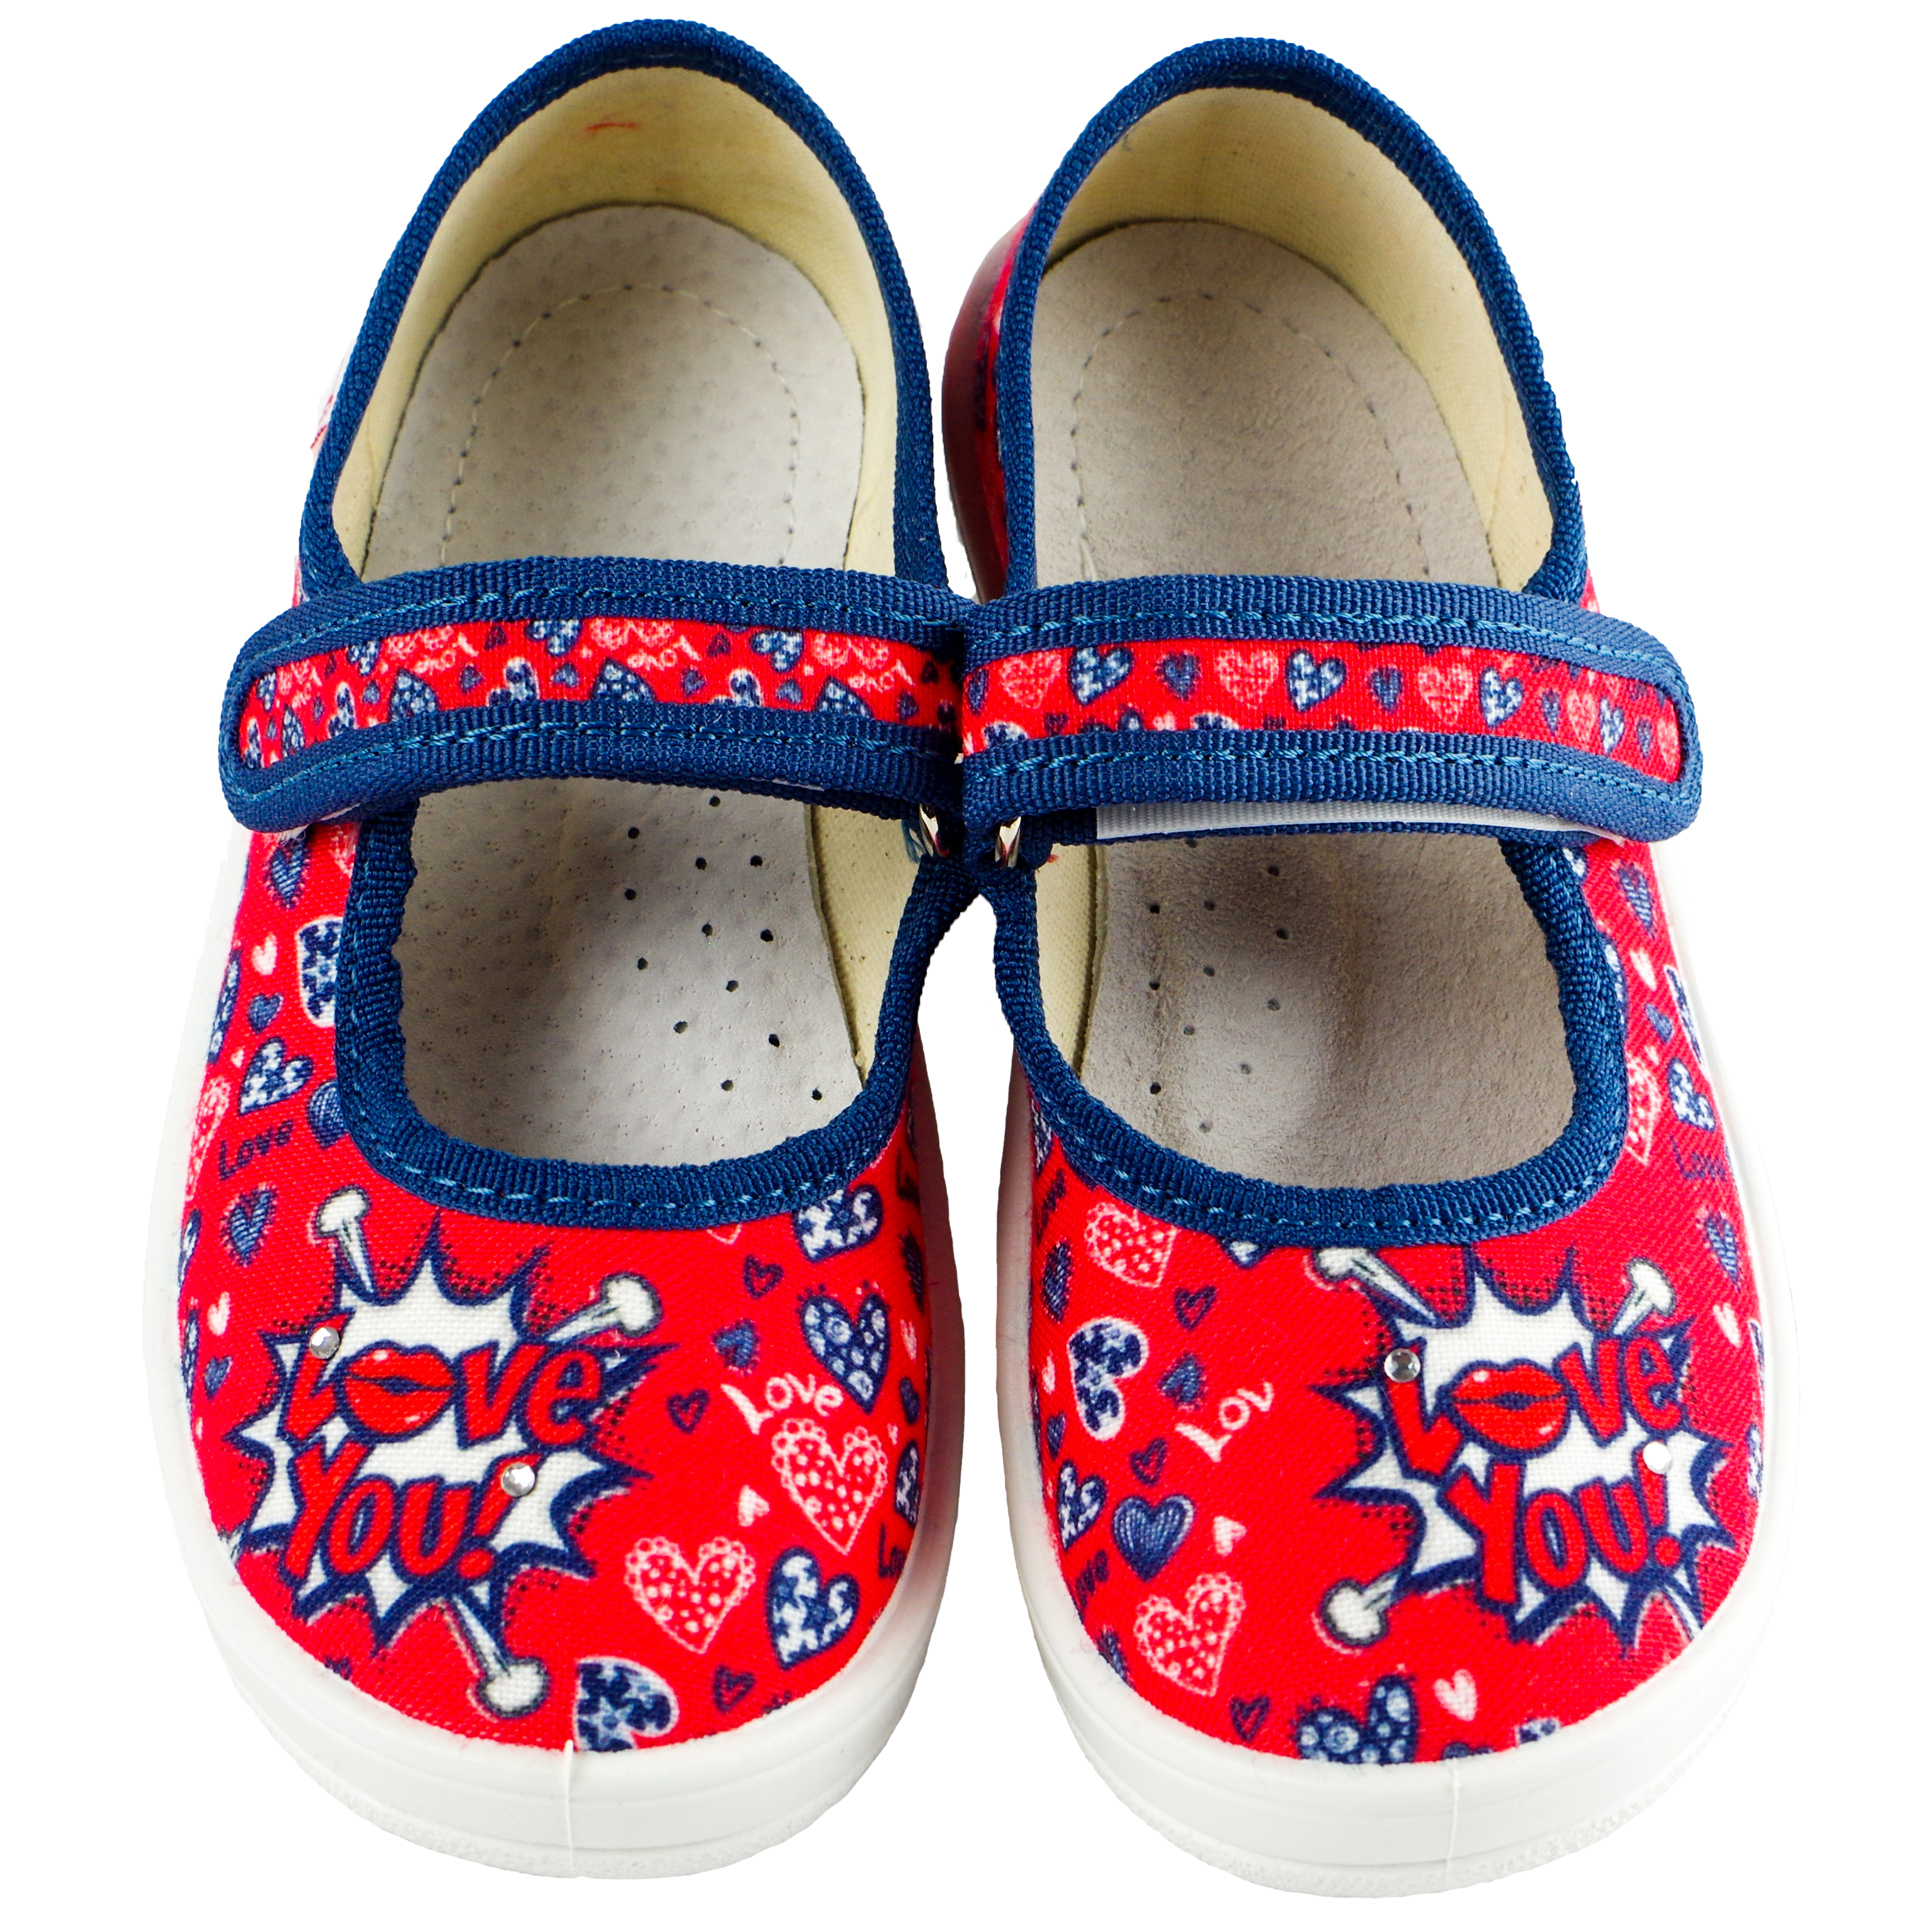 Текстильная обувь для девочек Тапочки Катя (1818) цвет Красный 24-30 размеры – Sole Kids. Фото 3